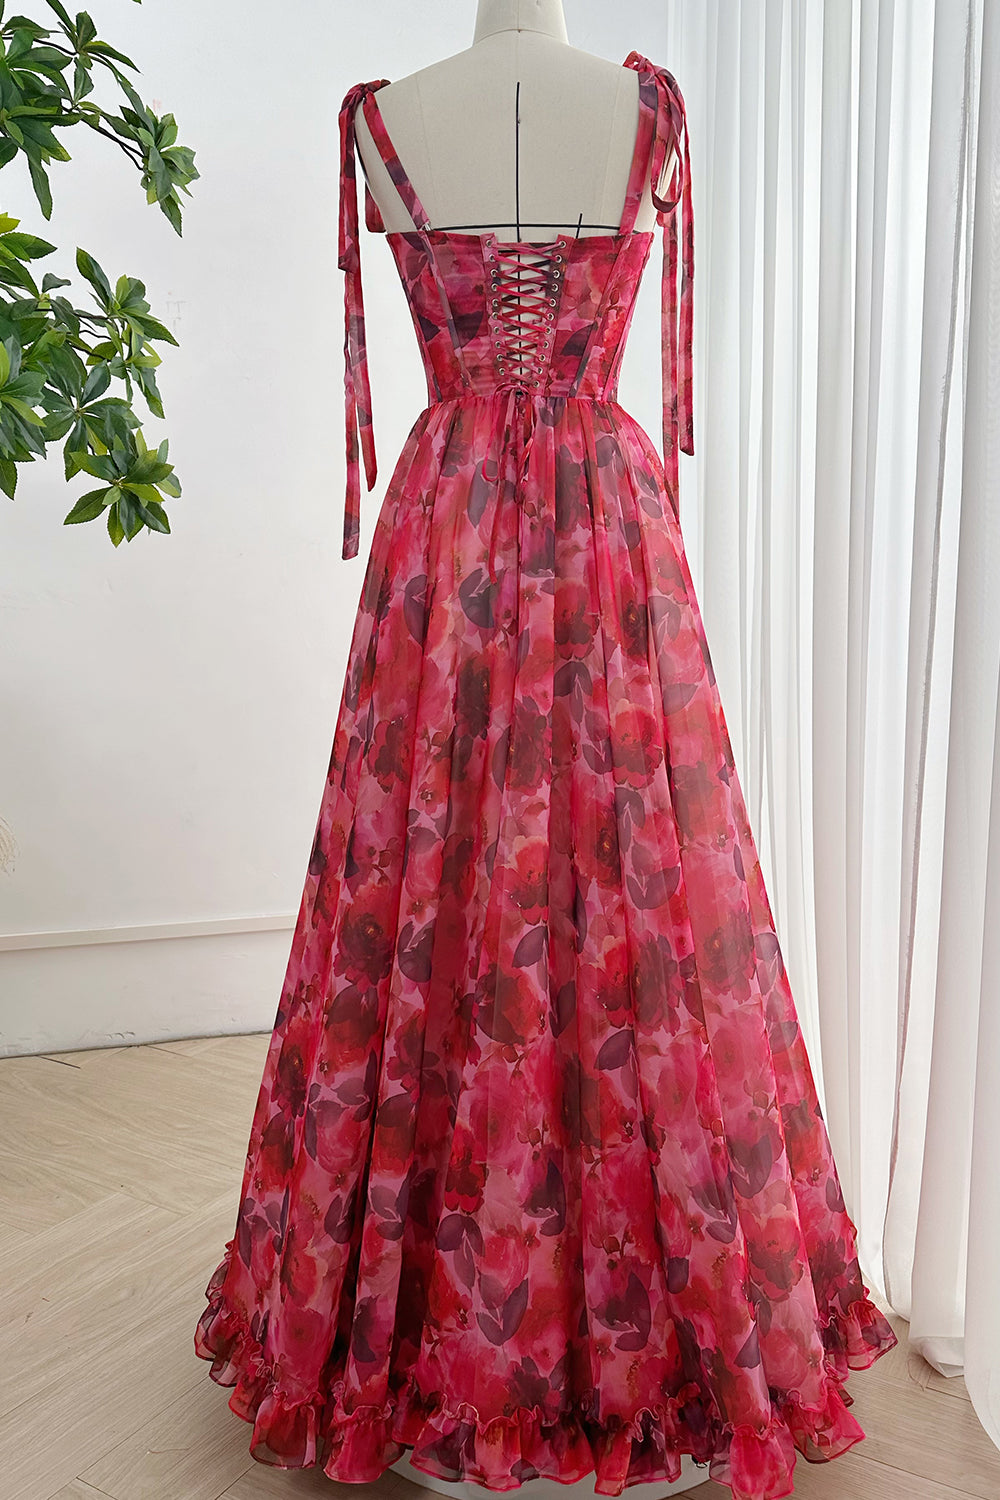 MissJophiel Strapless Corset Floral Print Chiffon Dress with Tie Straps